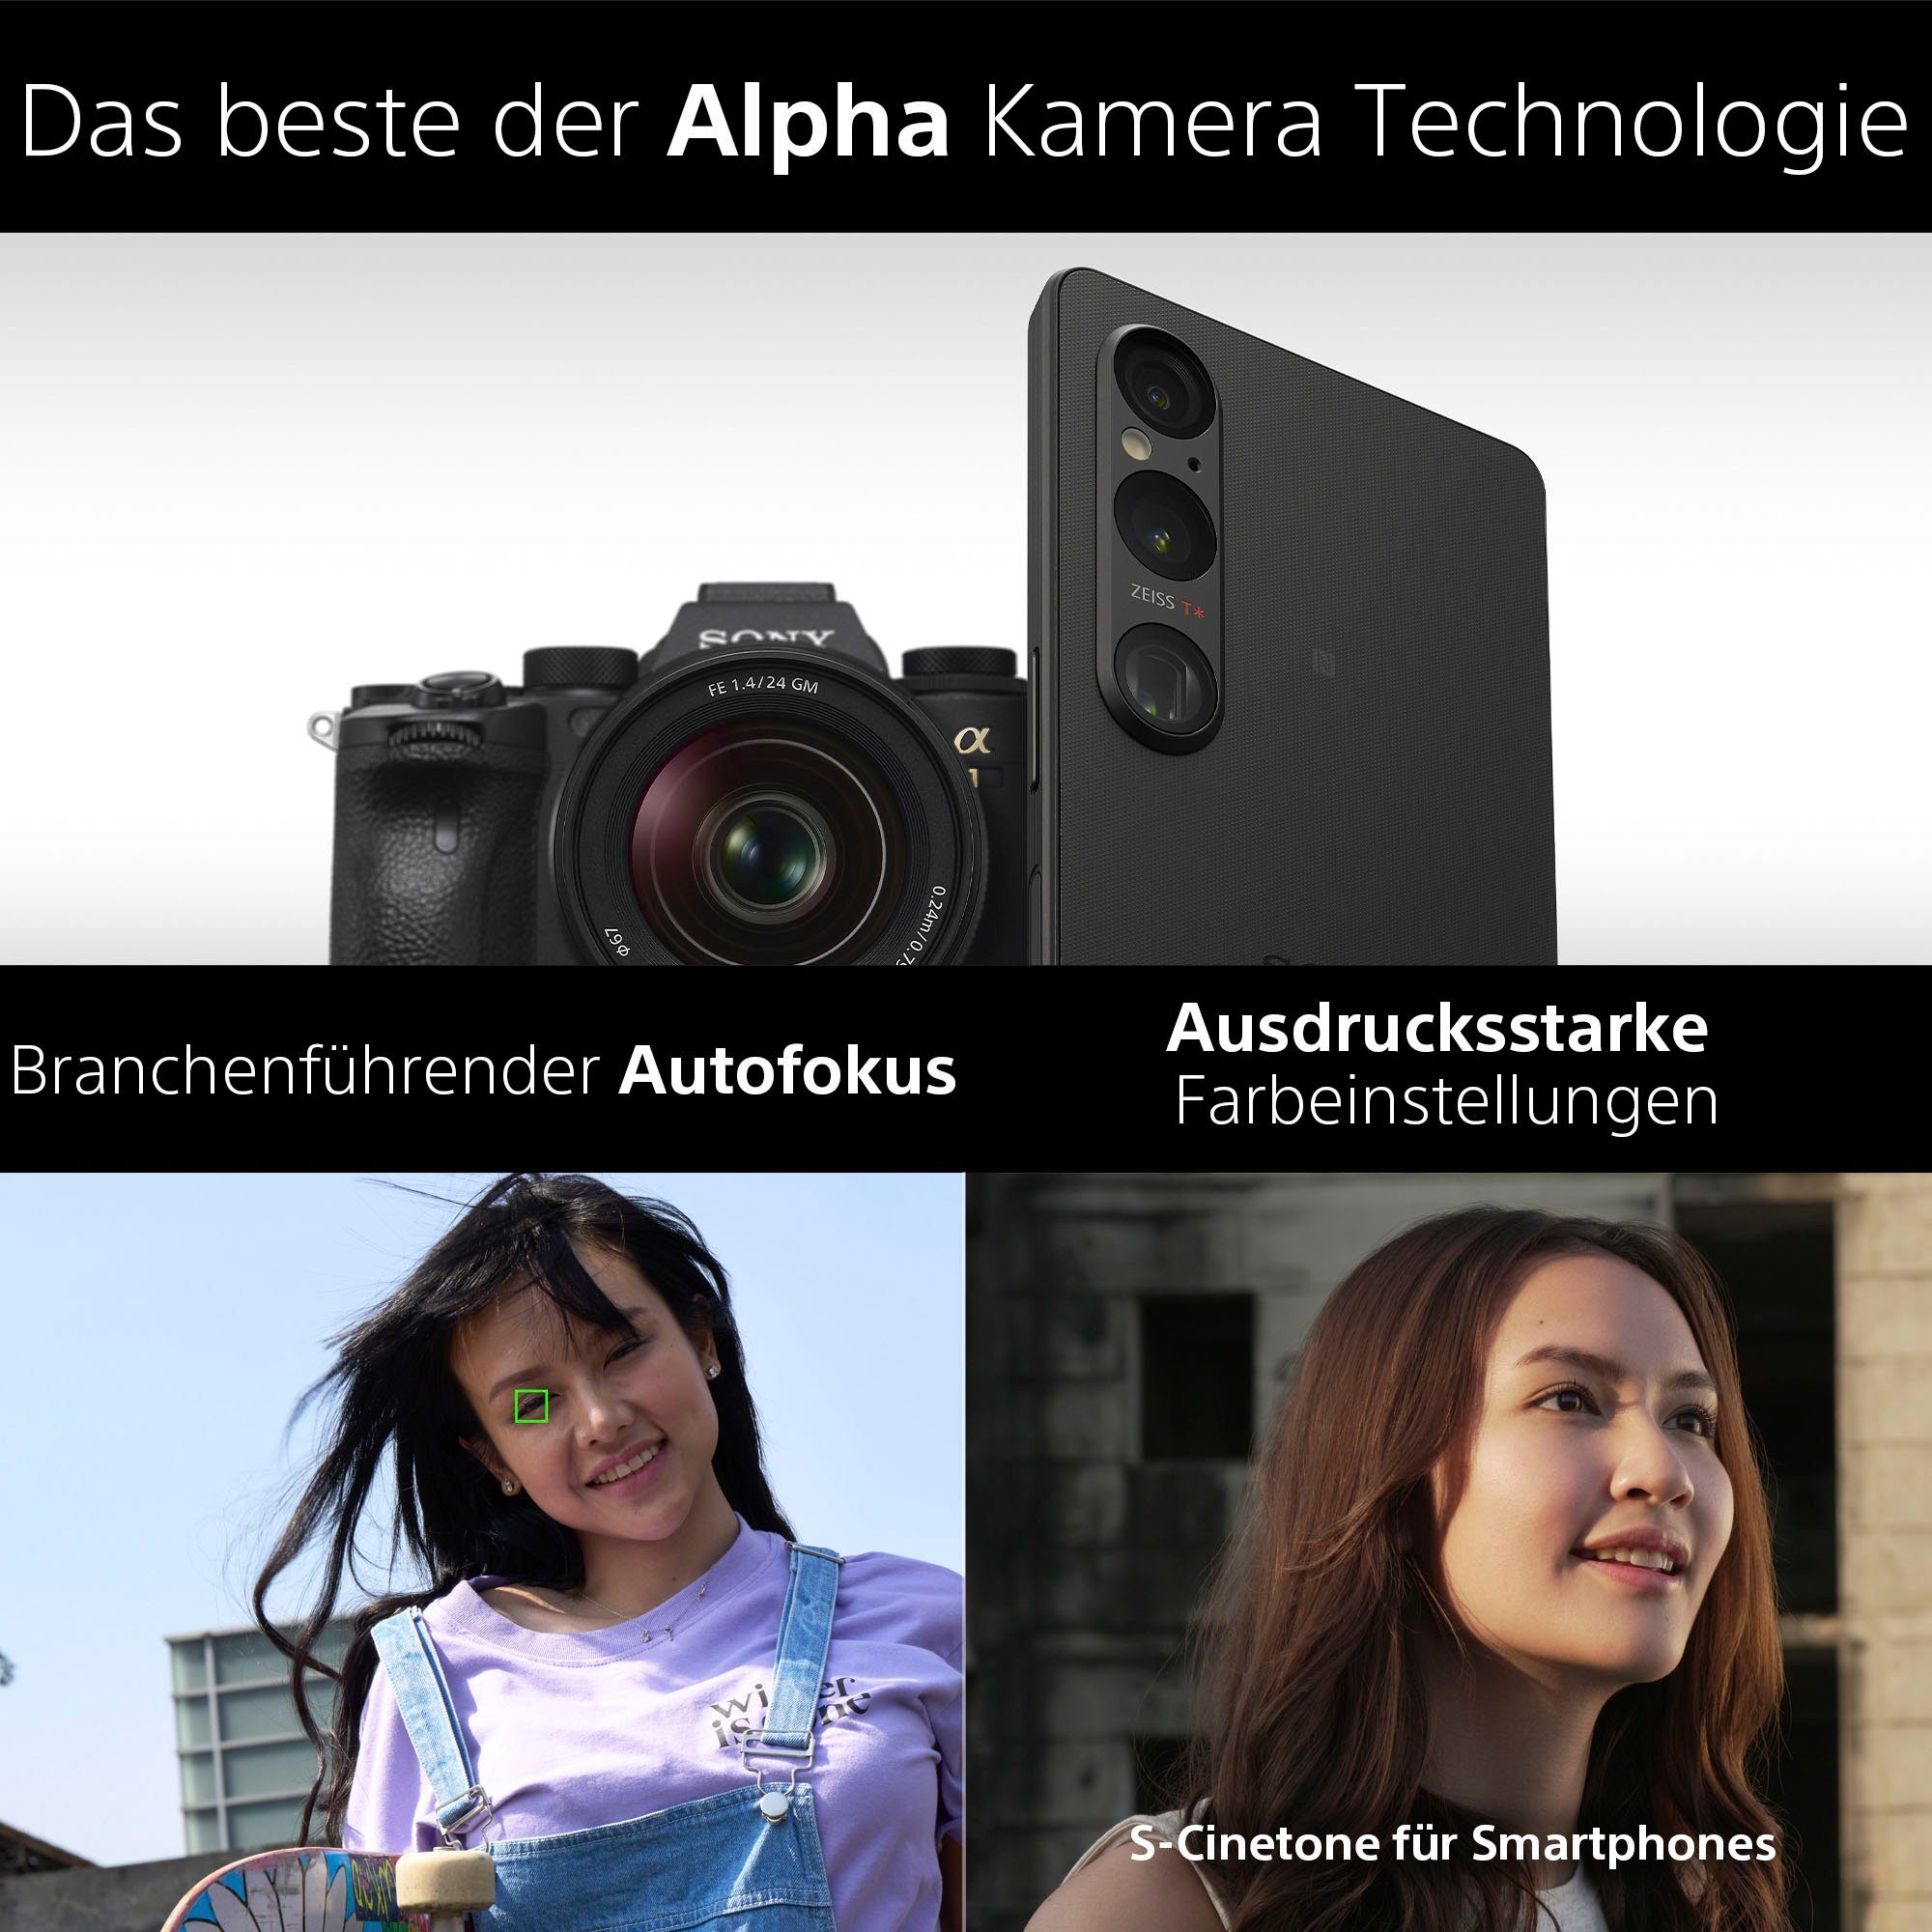 MP 256 cm/6,5 1V schwarz Kamera) GB Speicherplatz, Smartphone (16,5 Sony 52 XPERIA Zoll,